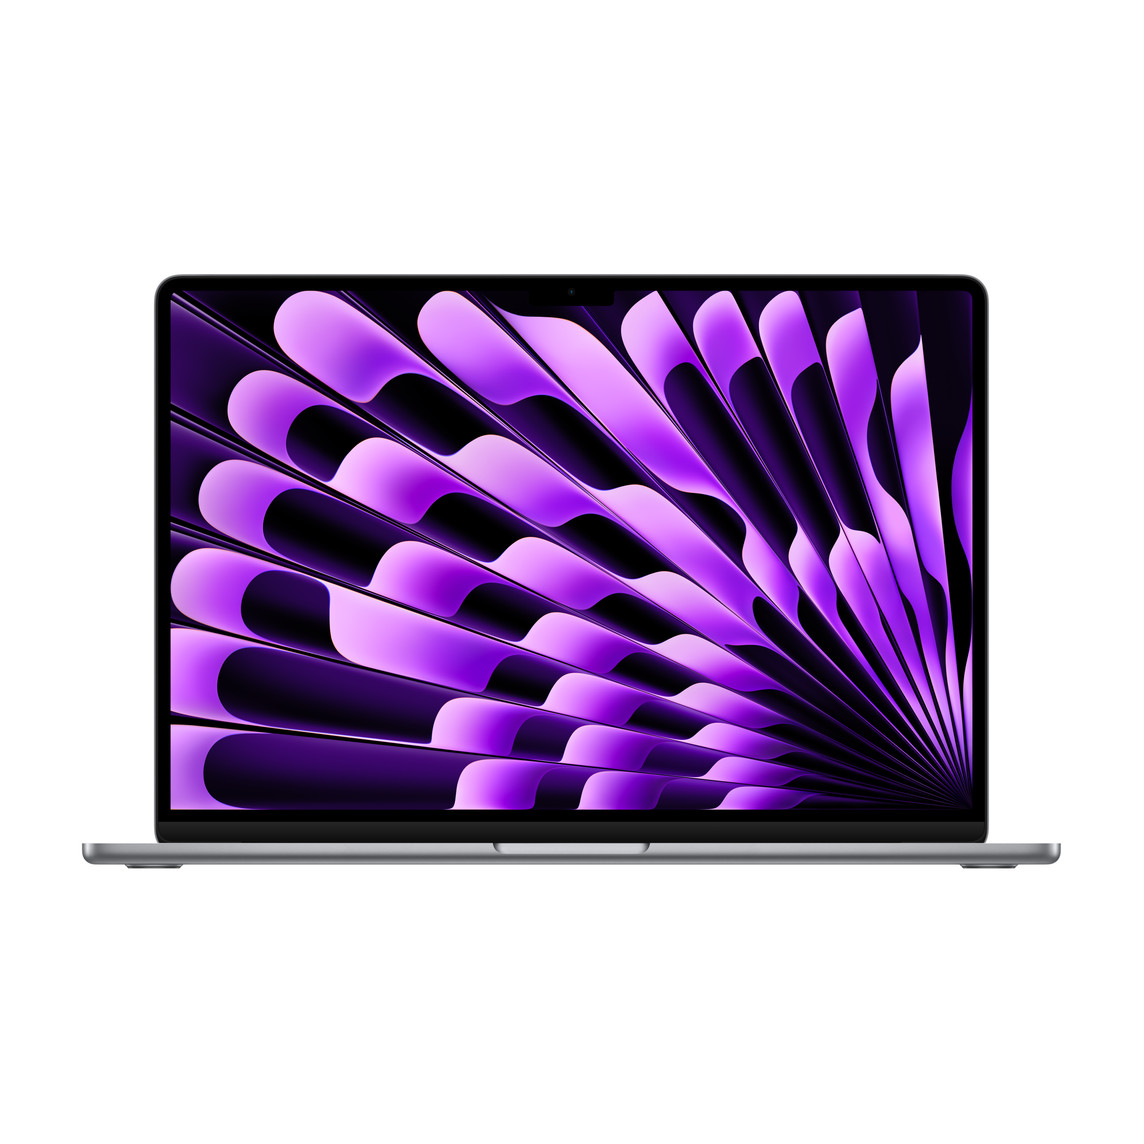 呈打开状态的深空灰色 15 英寸 MacBook Air，展示细窄边框、FaceTime 高清摄像头、凸出的垫脚、曲边设计。